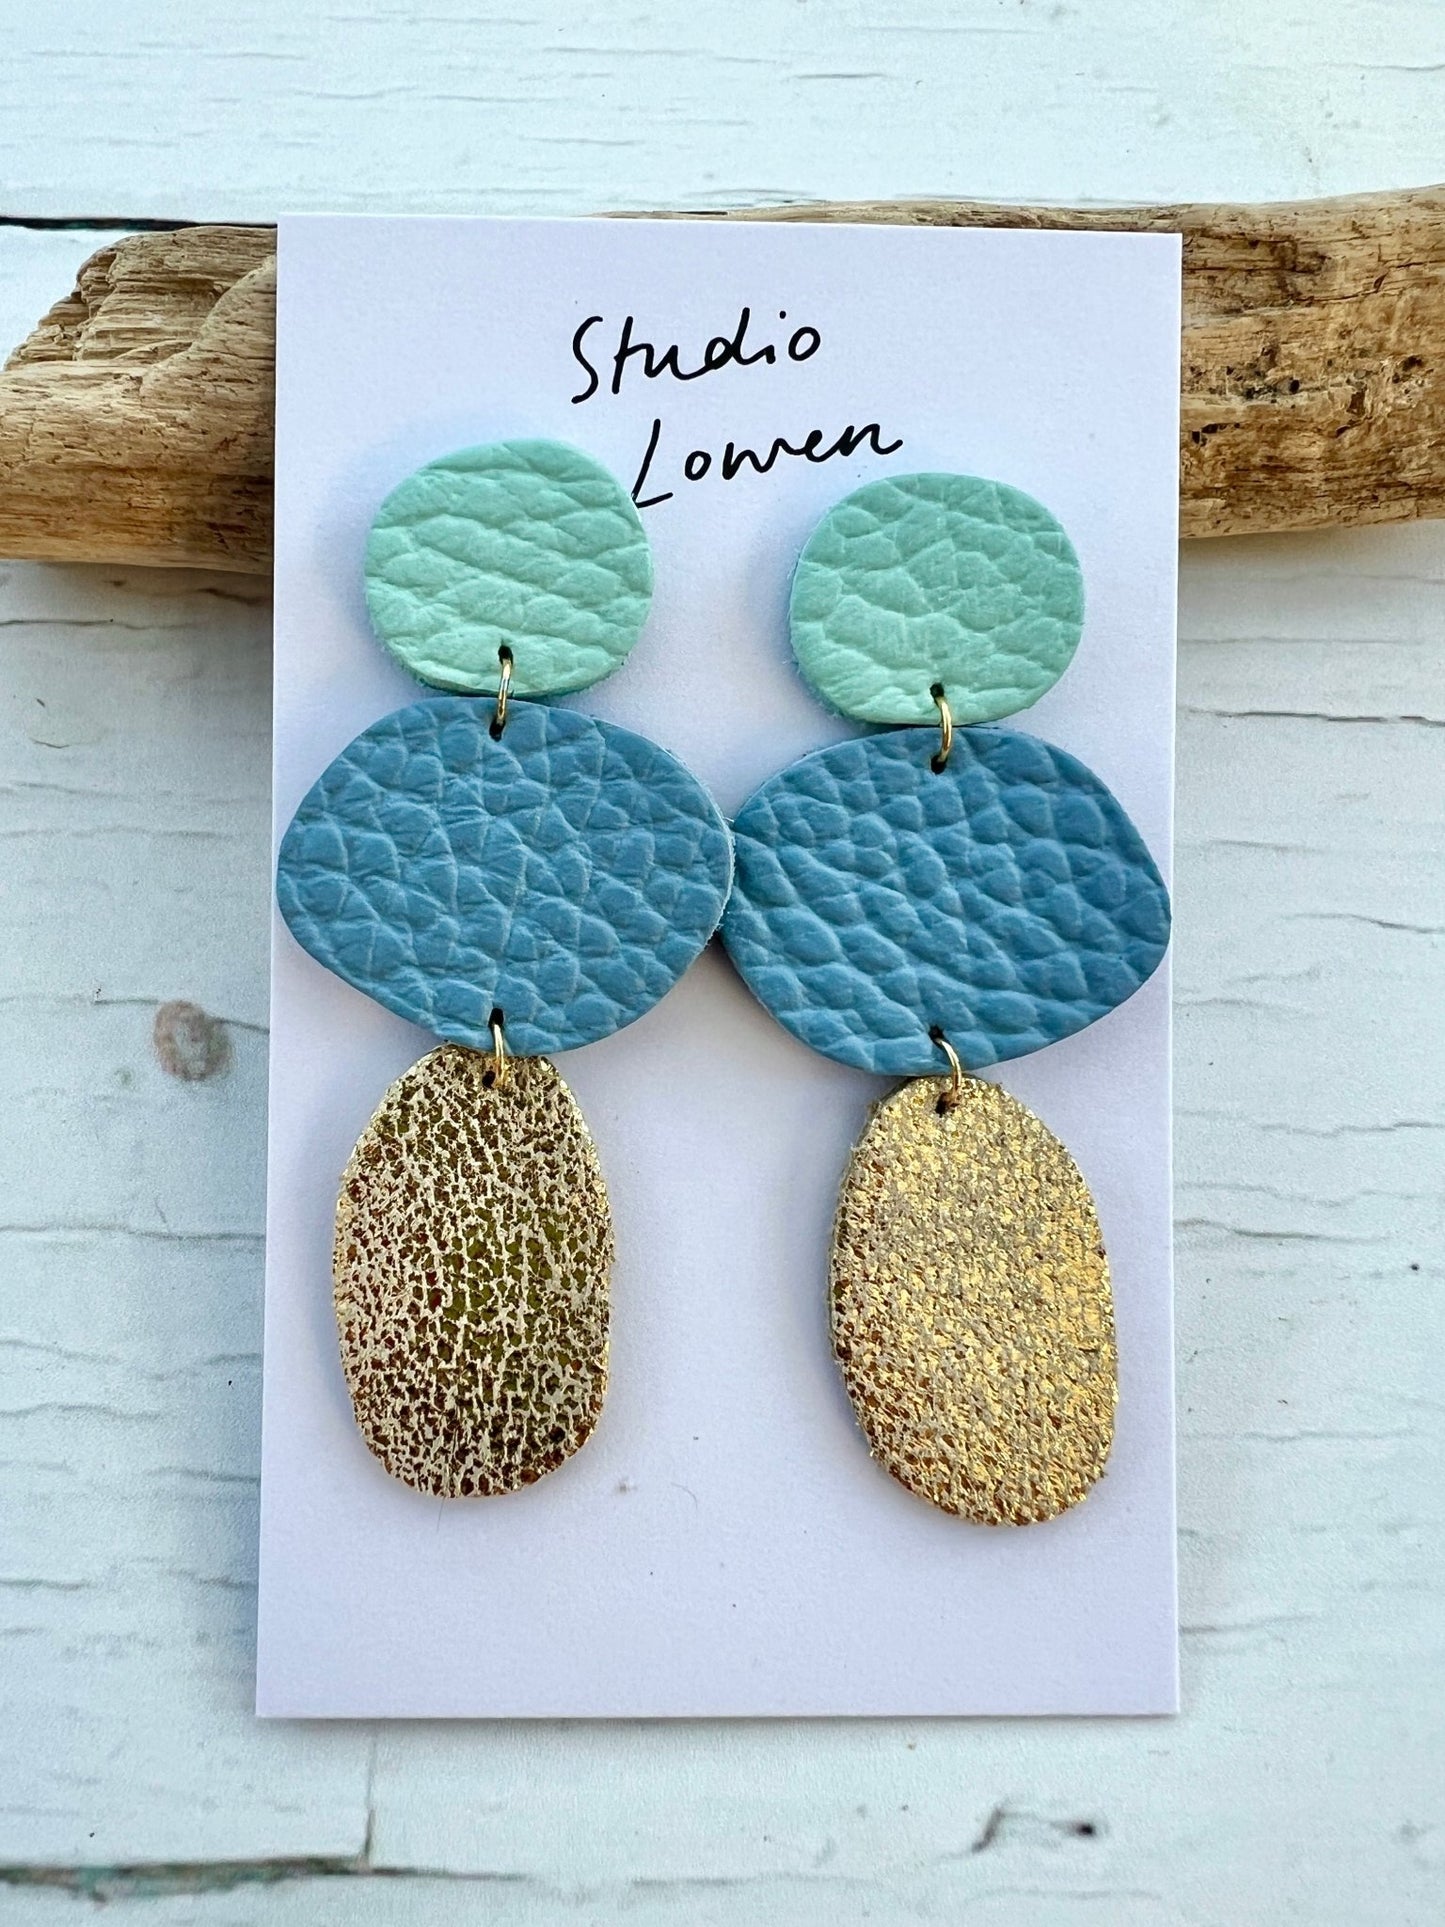 Mint, Blue & Gold Leather Coastal Inspired Drop Earrings by Studio Lowen - Readymoney Beach Shop